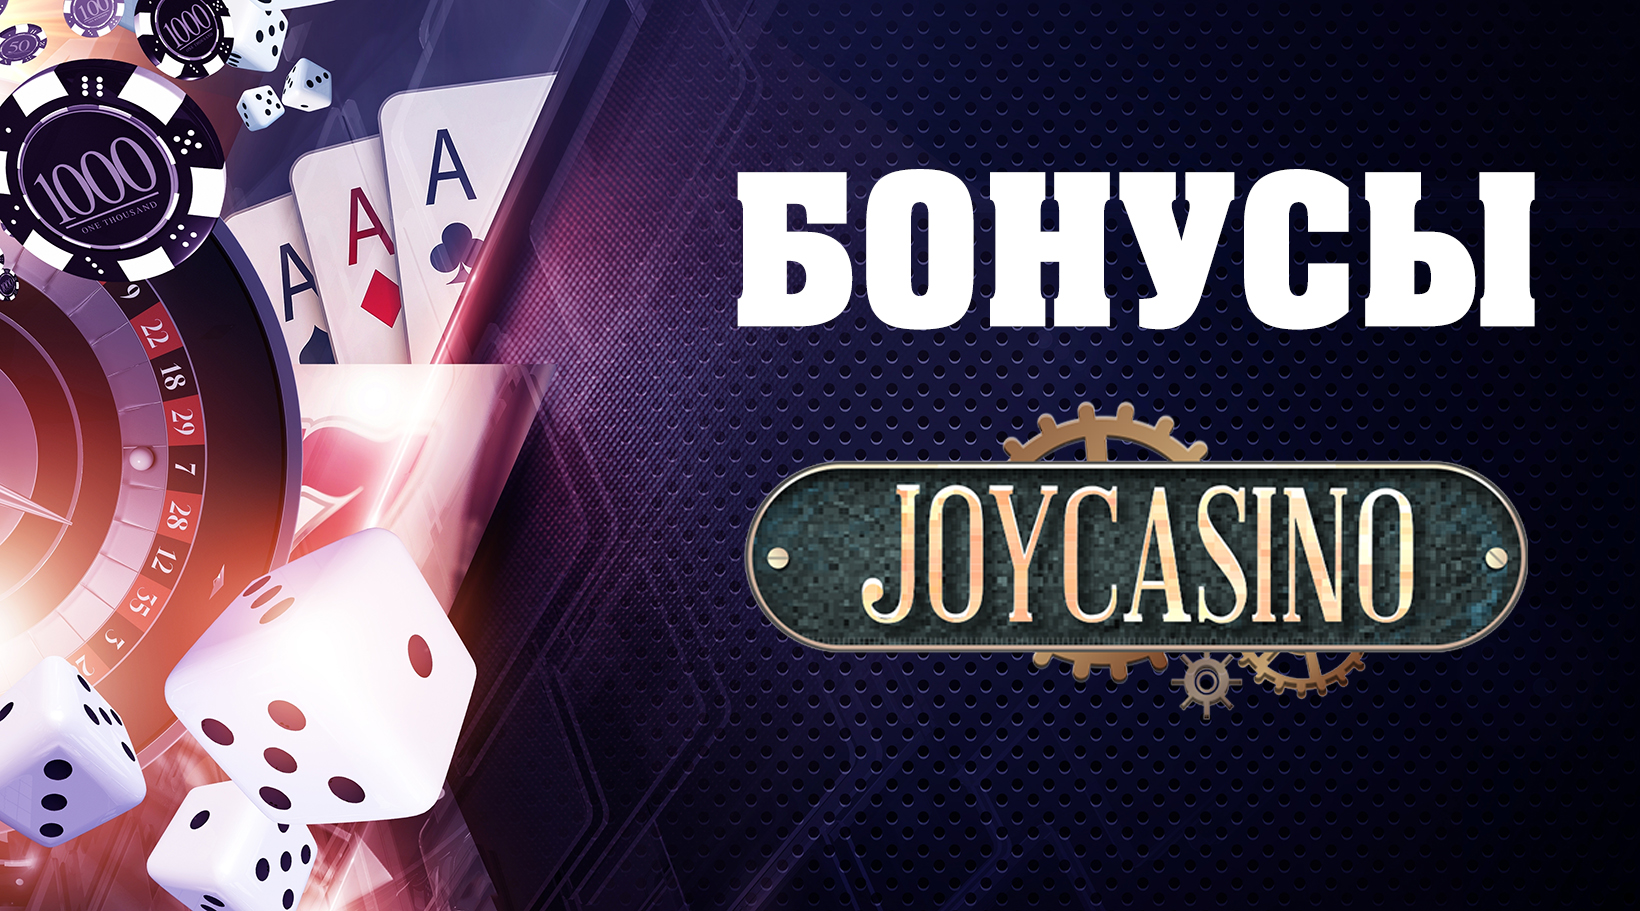 Online casino joycasino казино 24 онлайн вулкан бесплатно игровые автоматы